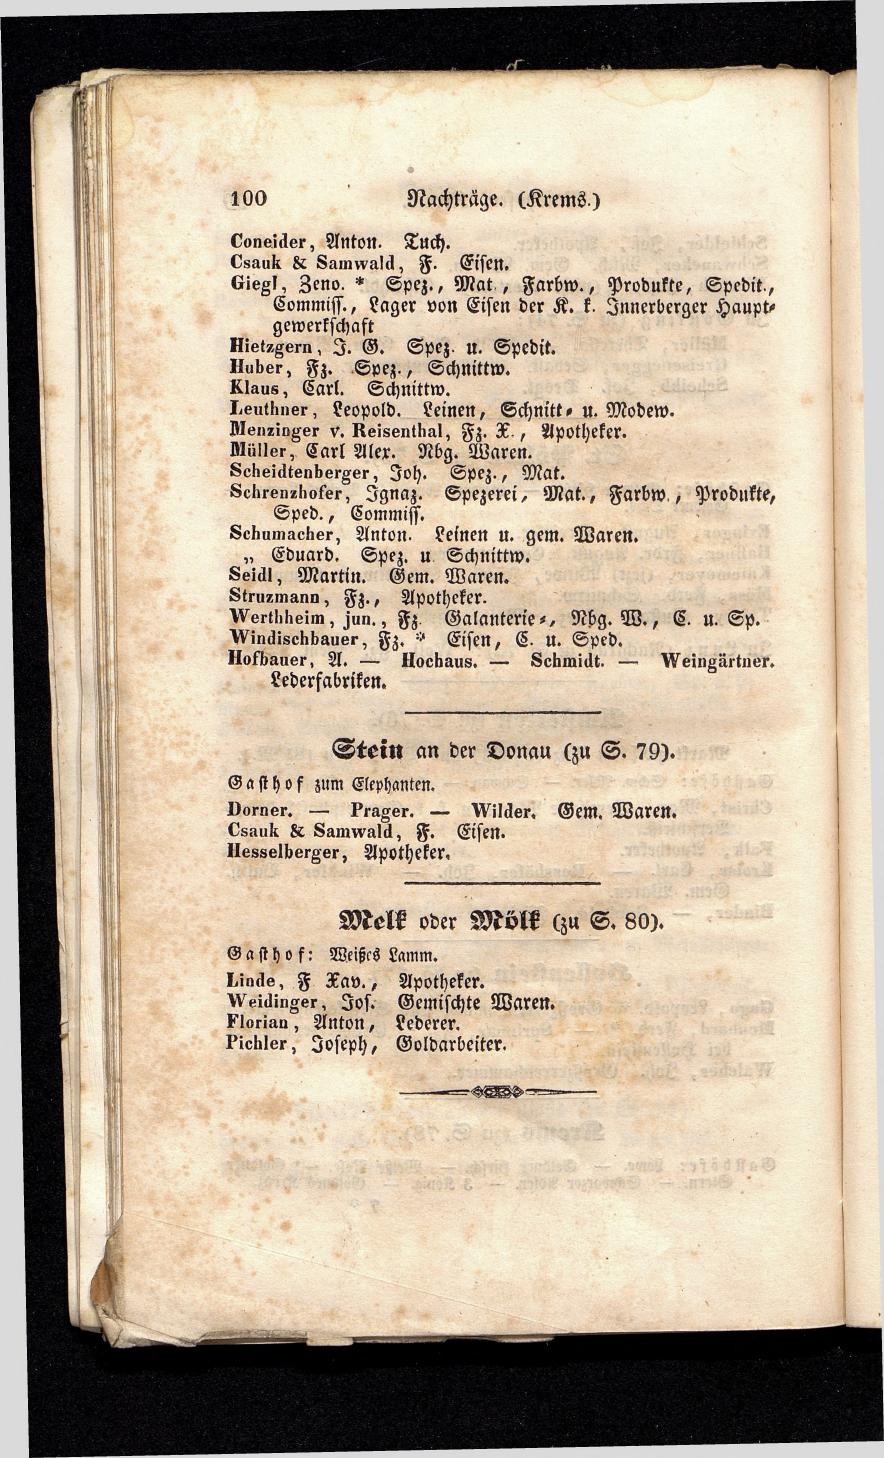 Grosses Adressbuch der Kaufleute. No. 13. Oesterreich ober u. unter der Enns 1844 - Seite 104